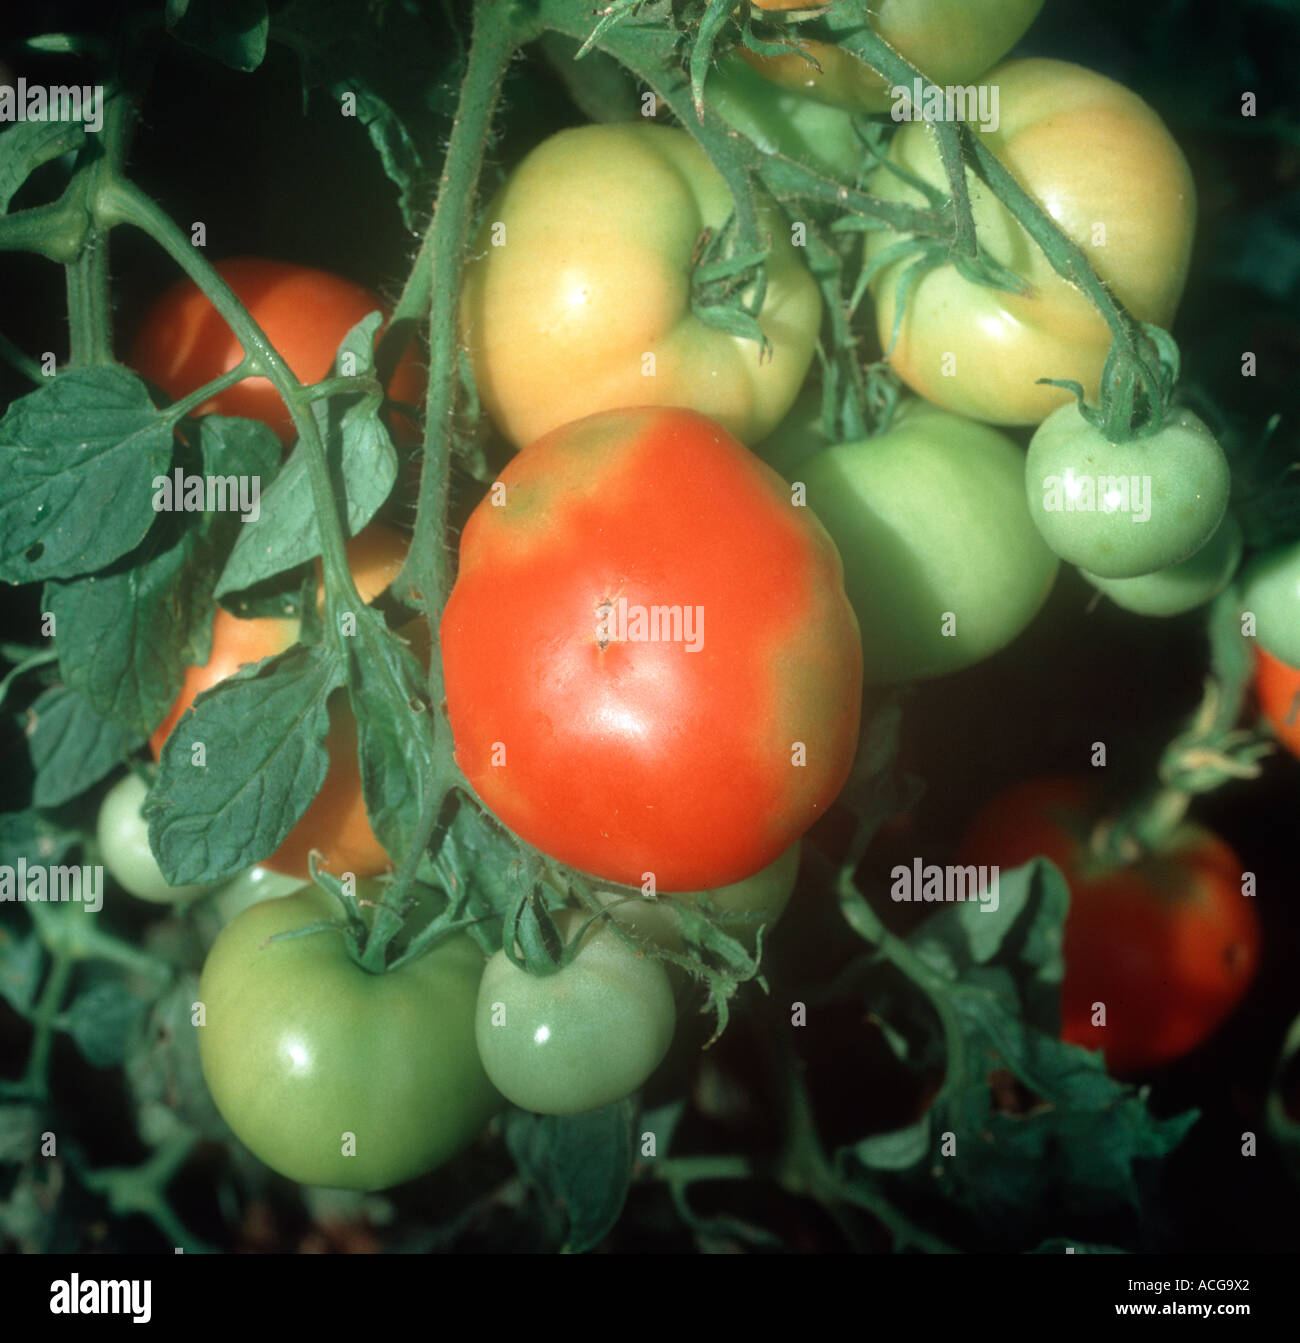 Fleckige Farbe auf Tomatenfrucht verursacht durch ungleichmäßige Reifung Stockfoto